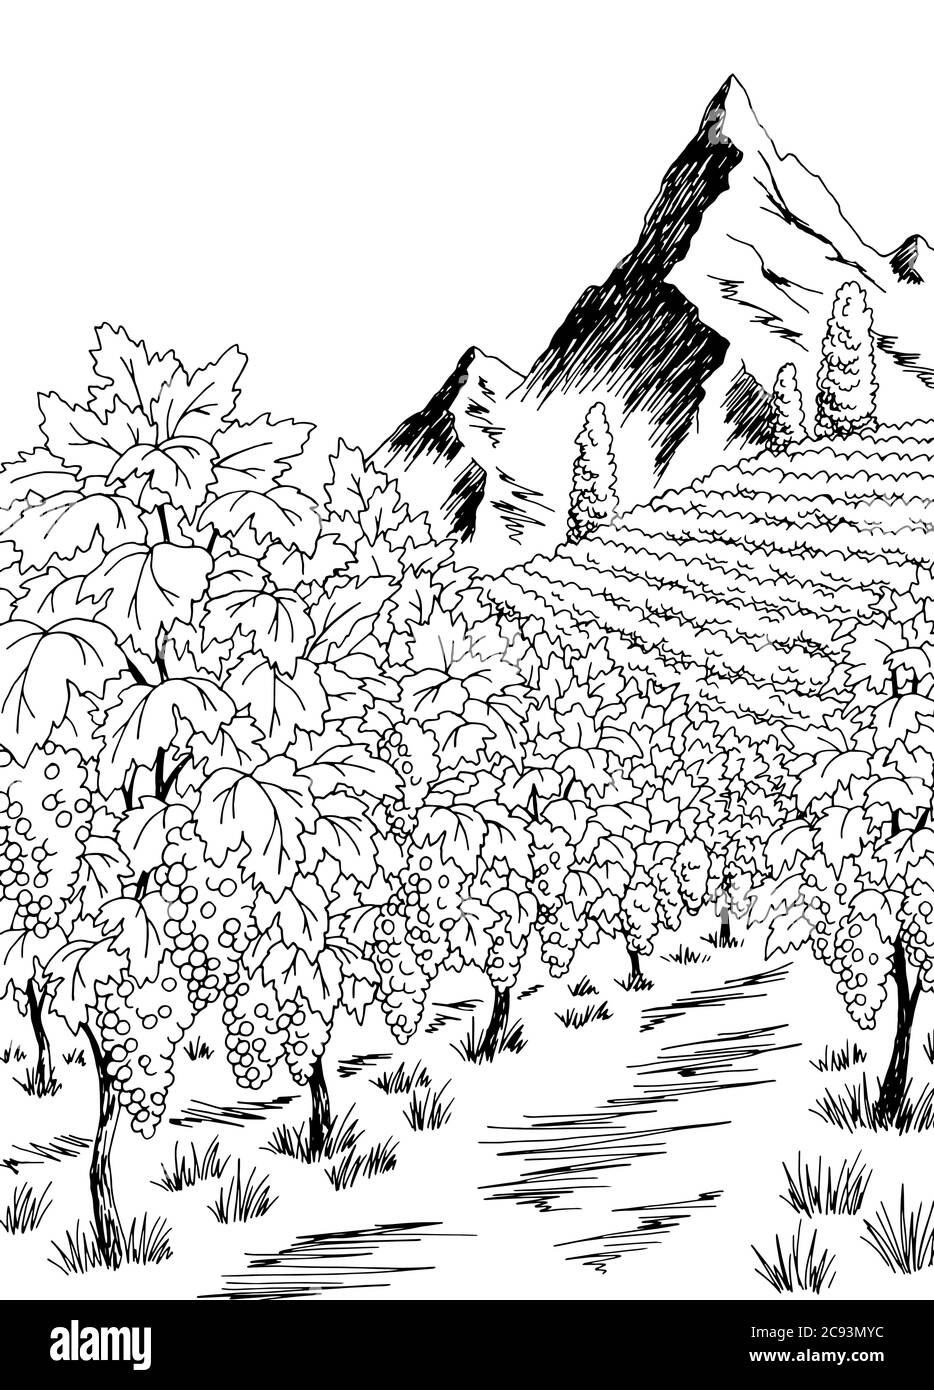 Vigne graphique noir blanc vertical paysage dessin illustration vecteur Illustration de Vecteur